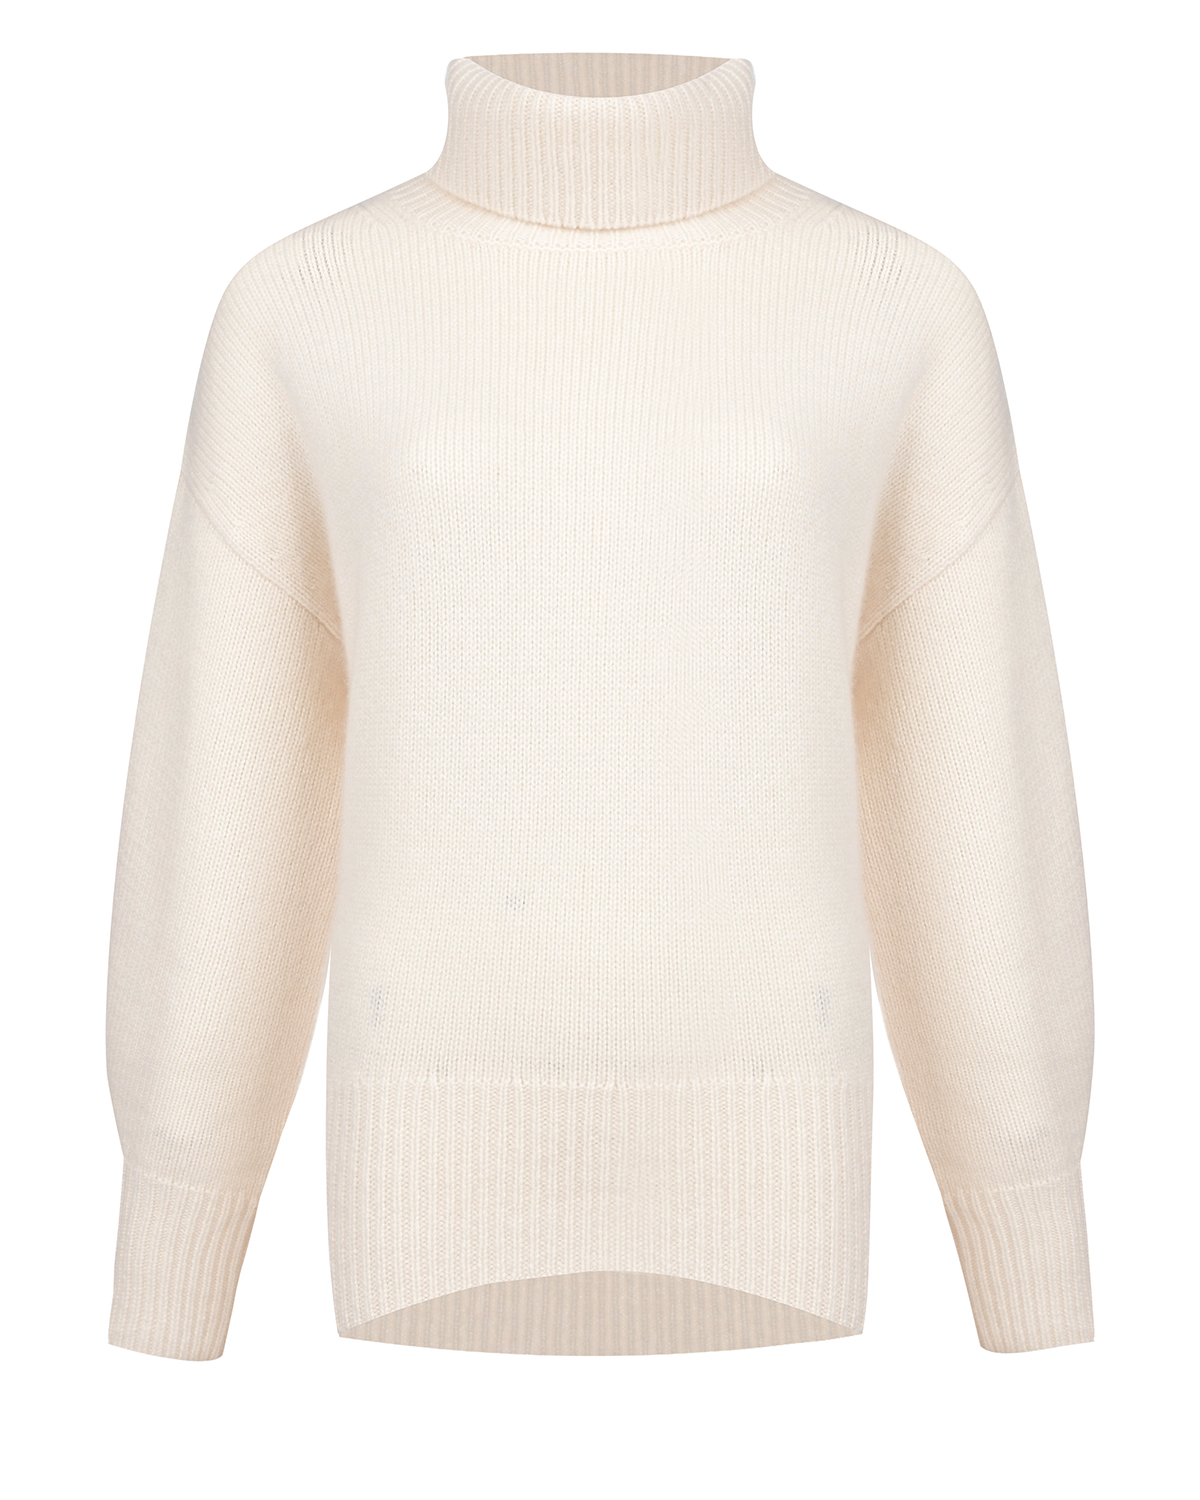 Кашемировый свитер молочного цвета Arch4, размер 38 - фото 1